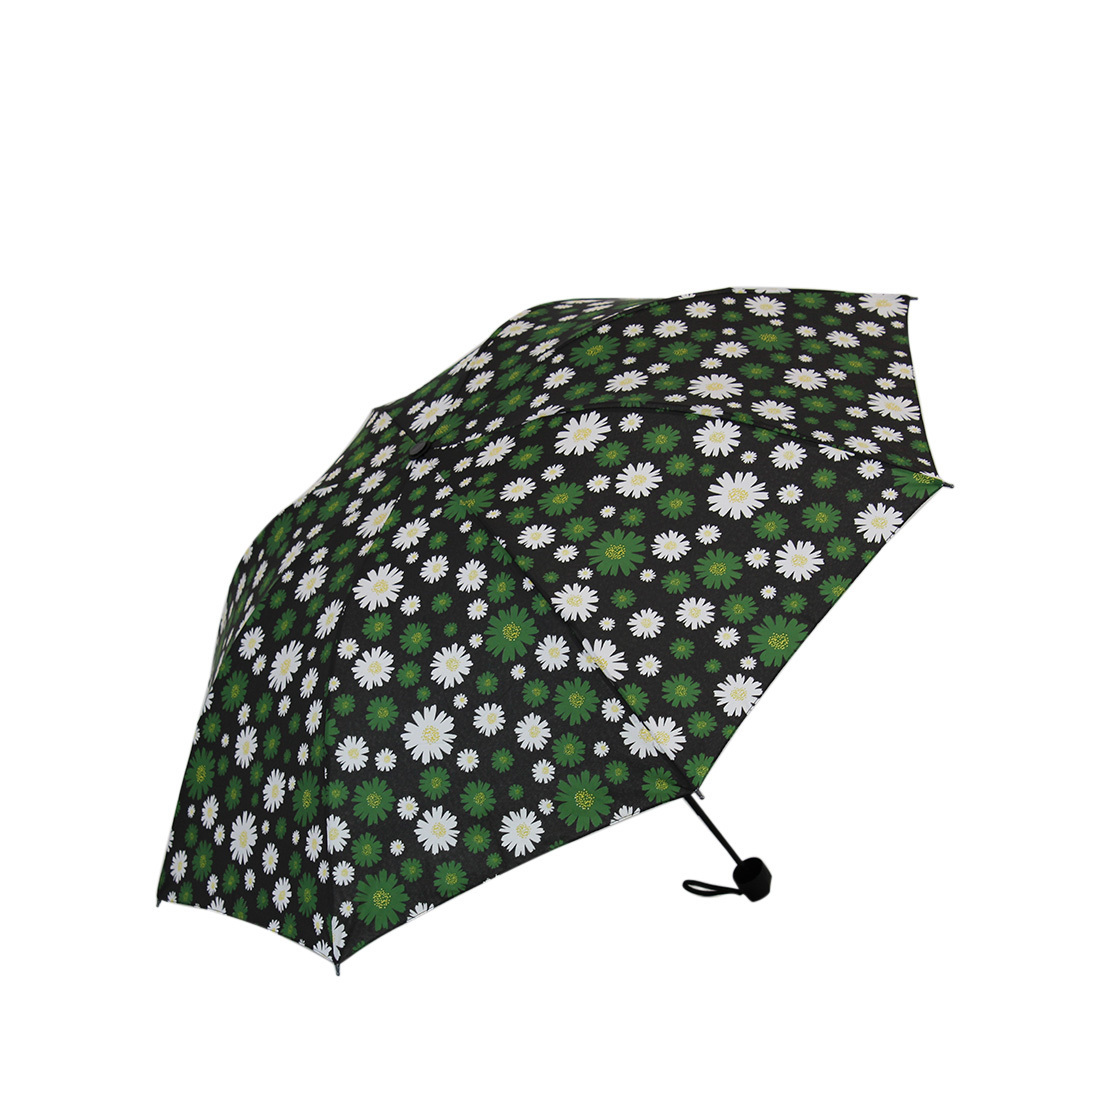 * Flower design umbrella